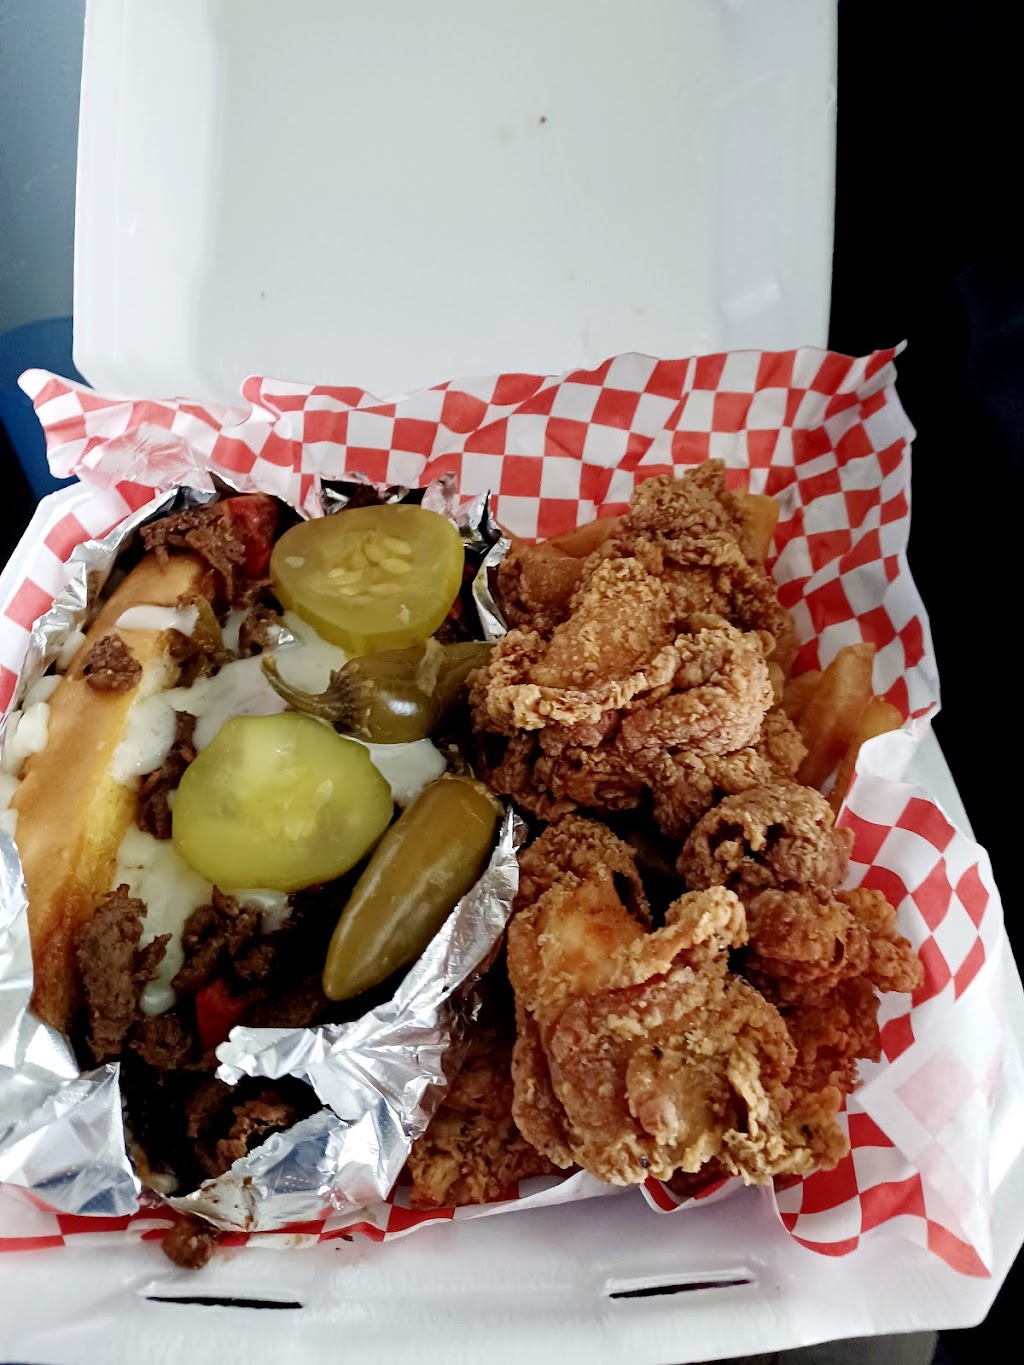 Big Bois Chicken -N- Waffles | 1007 W Camp Wisdom Rd, Dallas, TX 75232, USA | Phone: (469) 613-9055